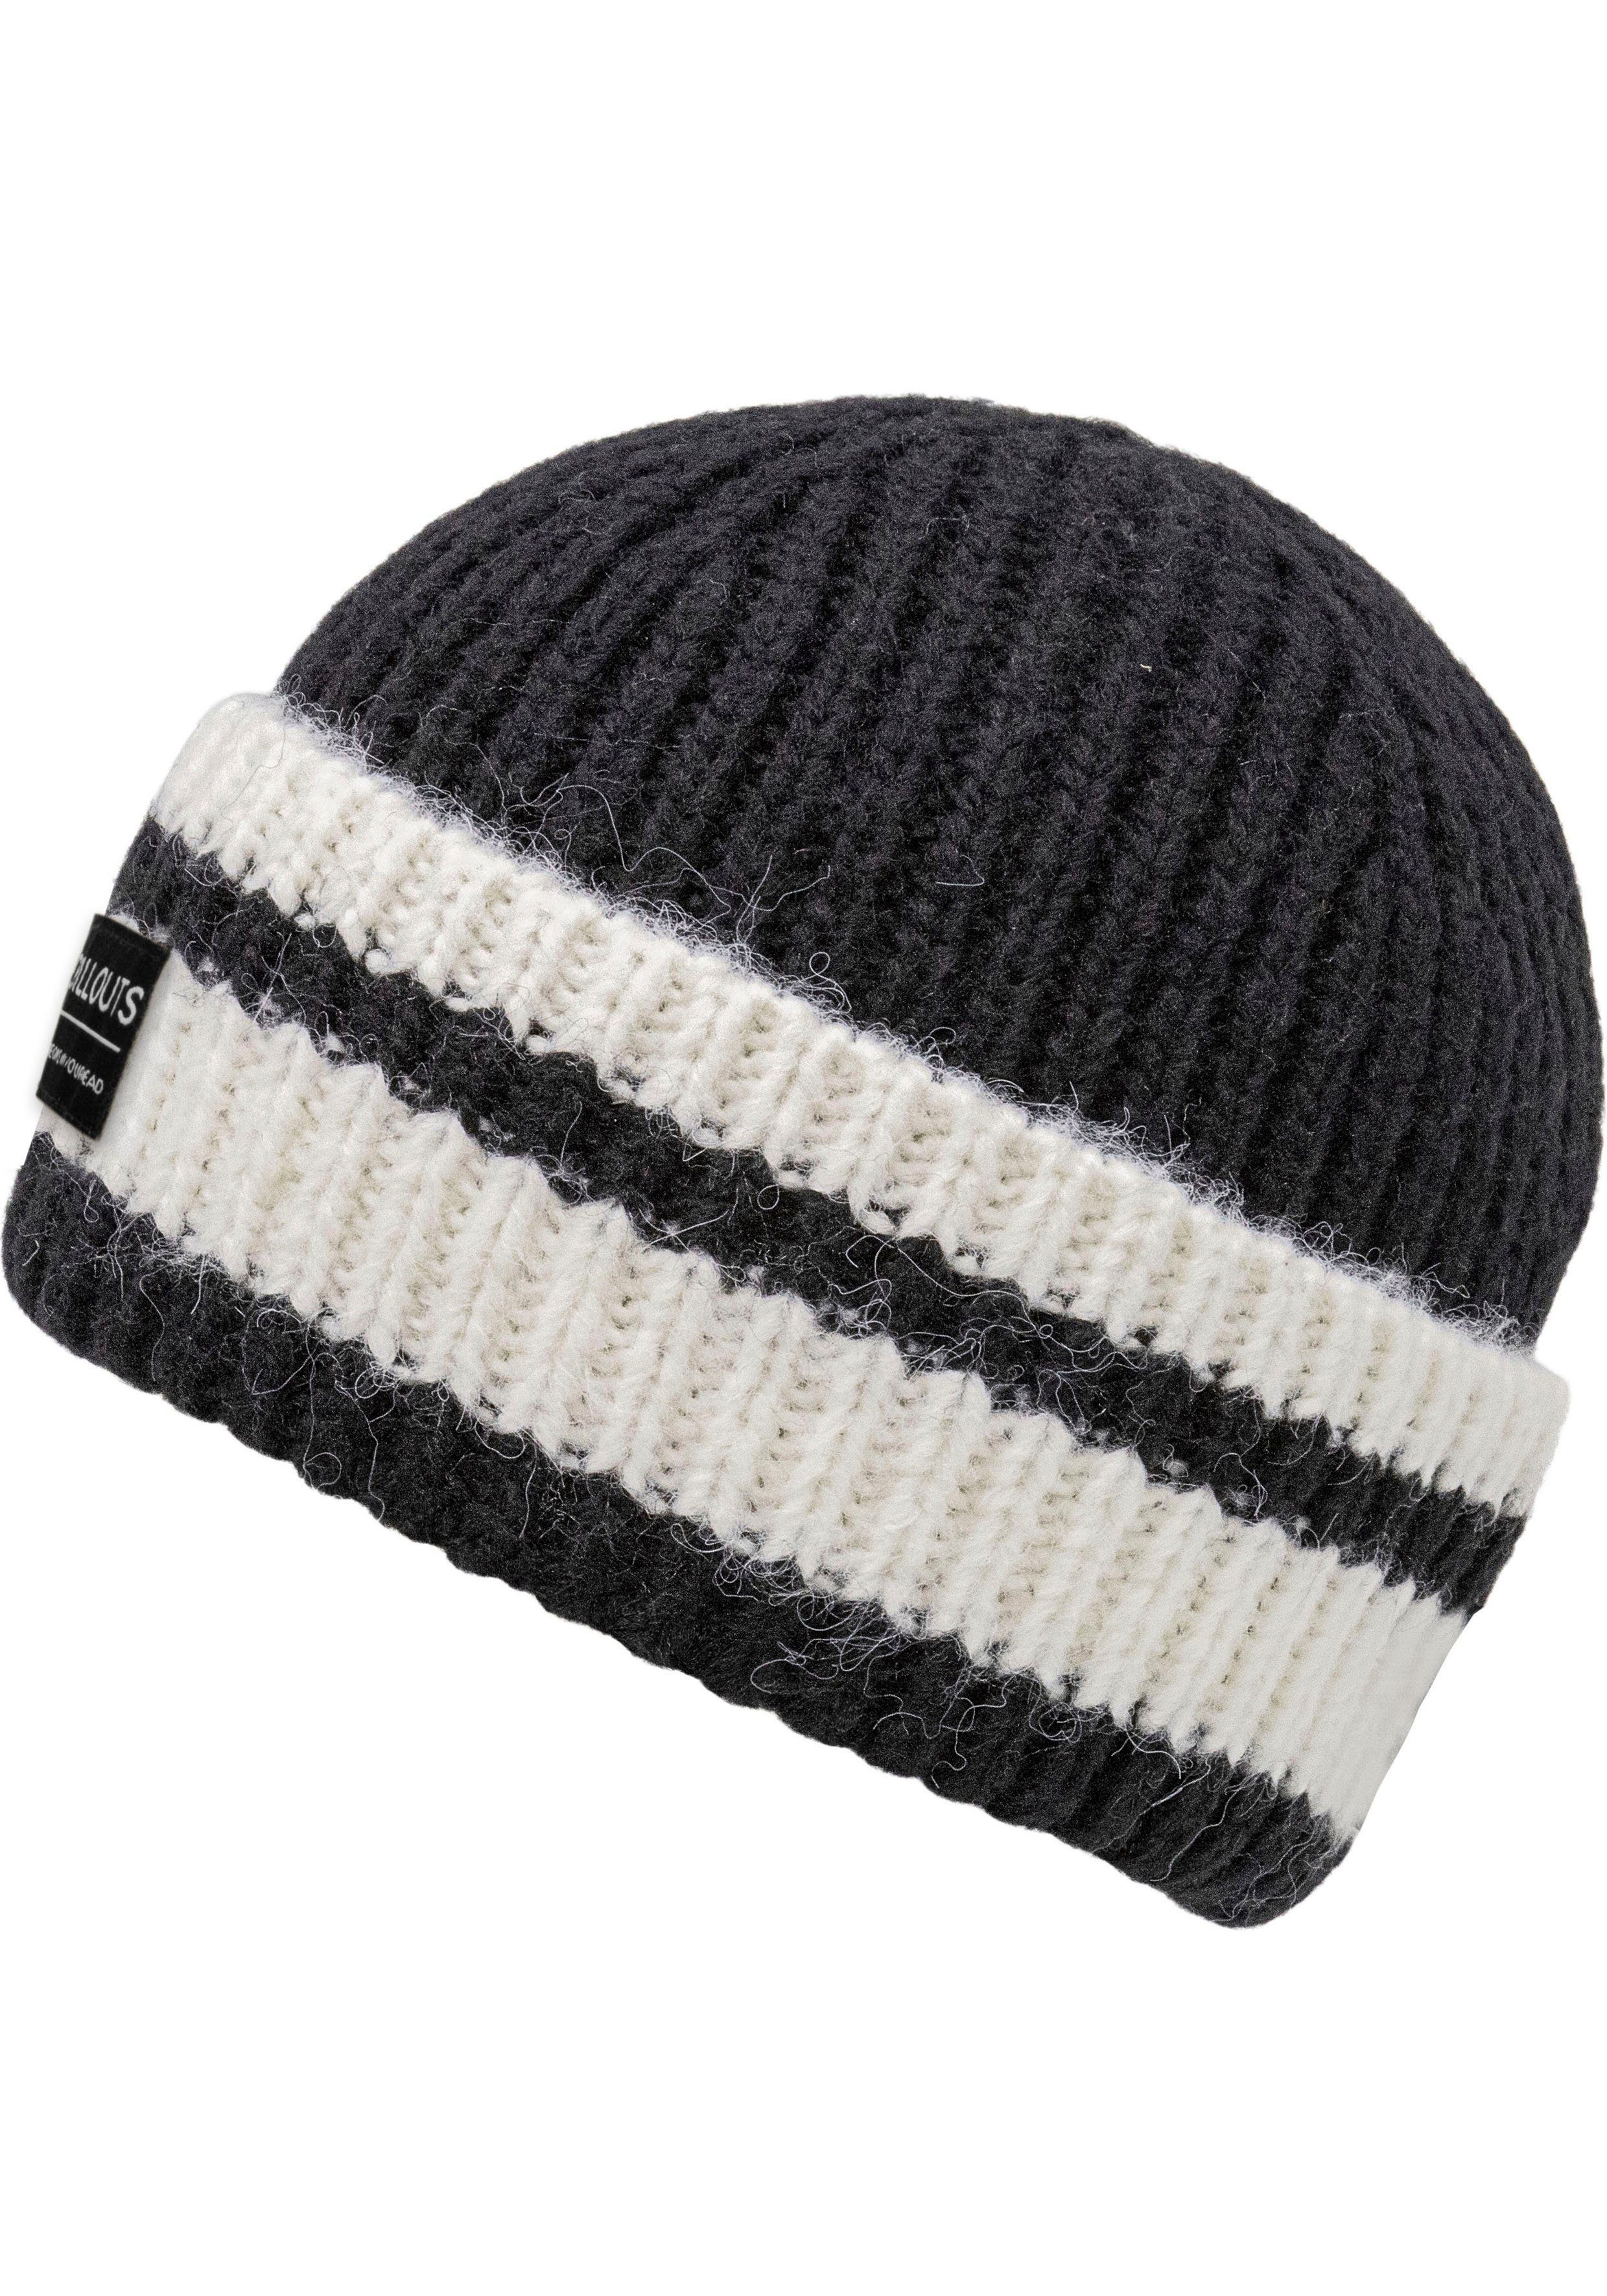 chillouts Strickmütze Cooper black-white Kontrast-Streifen Hat mit